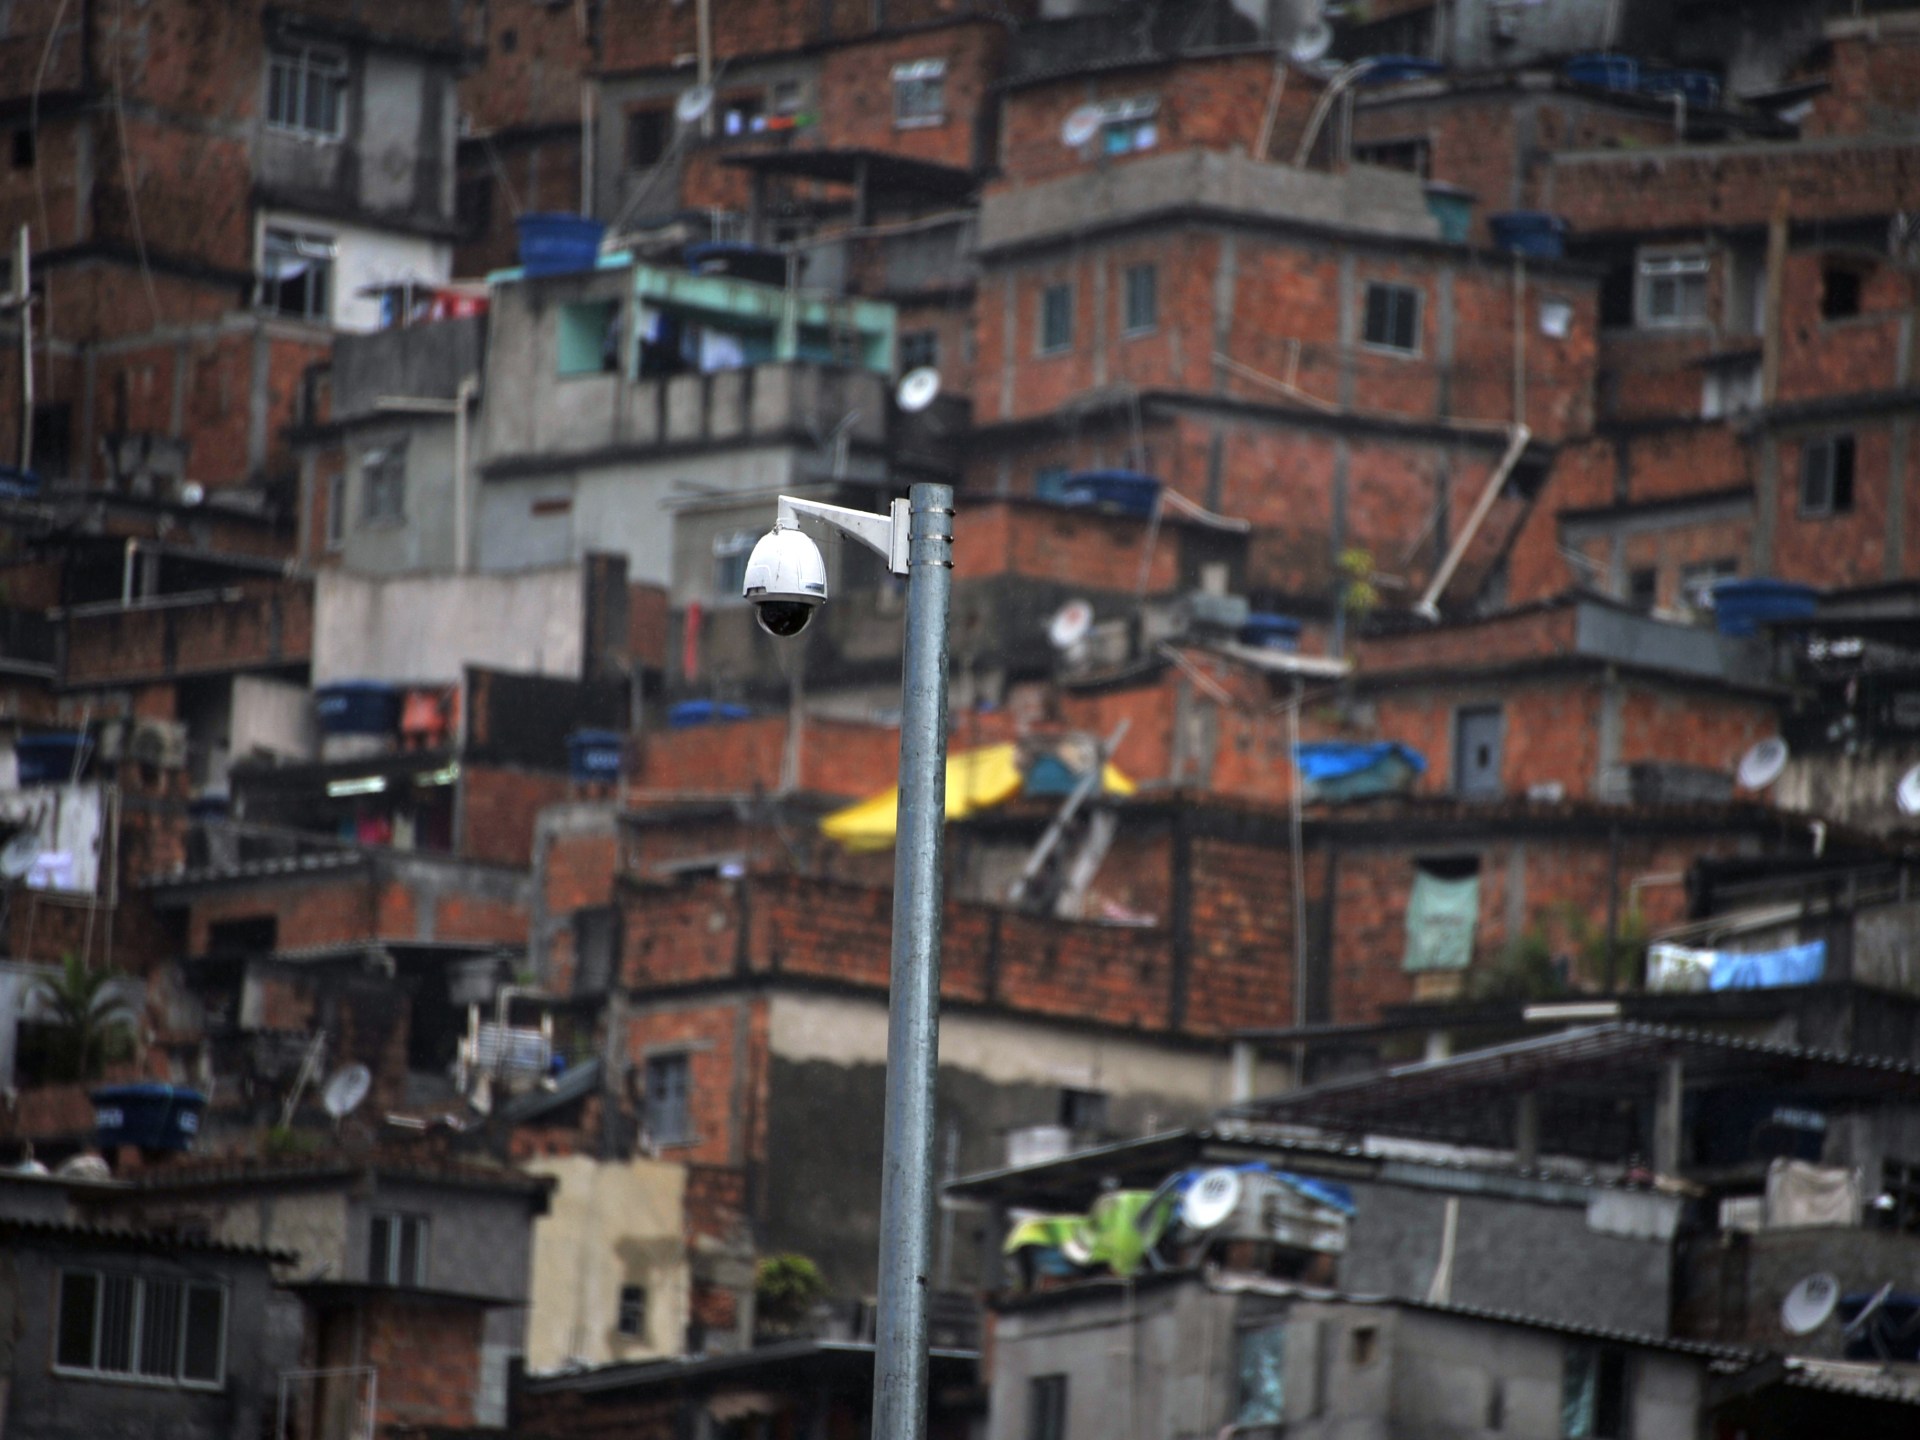 Vigilância por reconhecimento facial em São Paulo pode agravar racismo |  Notícias de Economia e Negócios